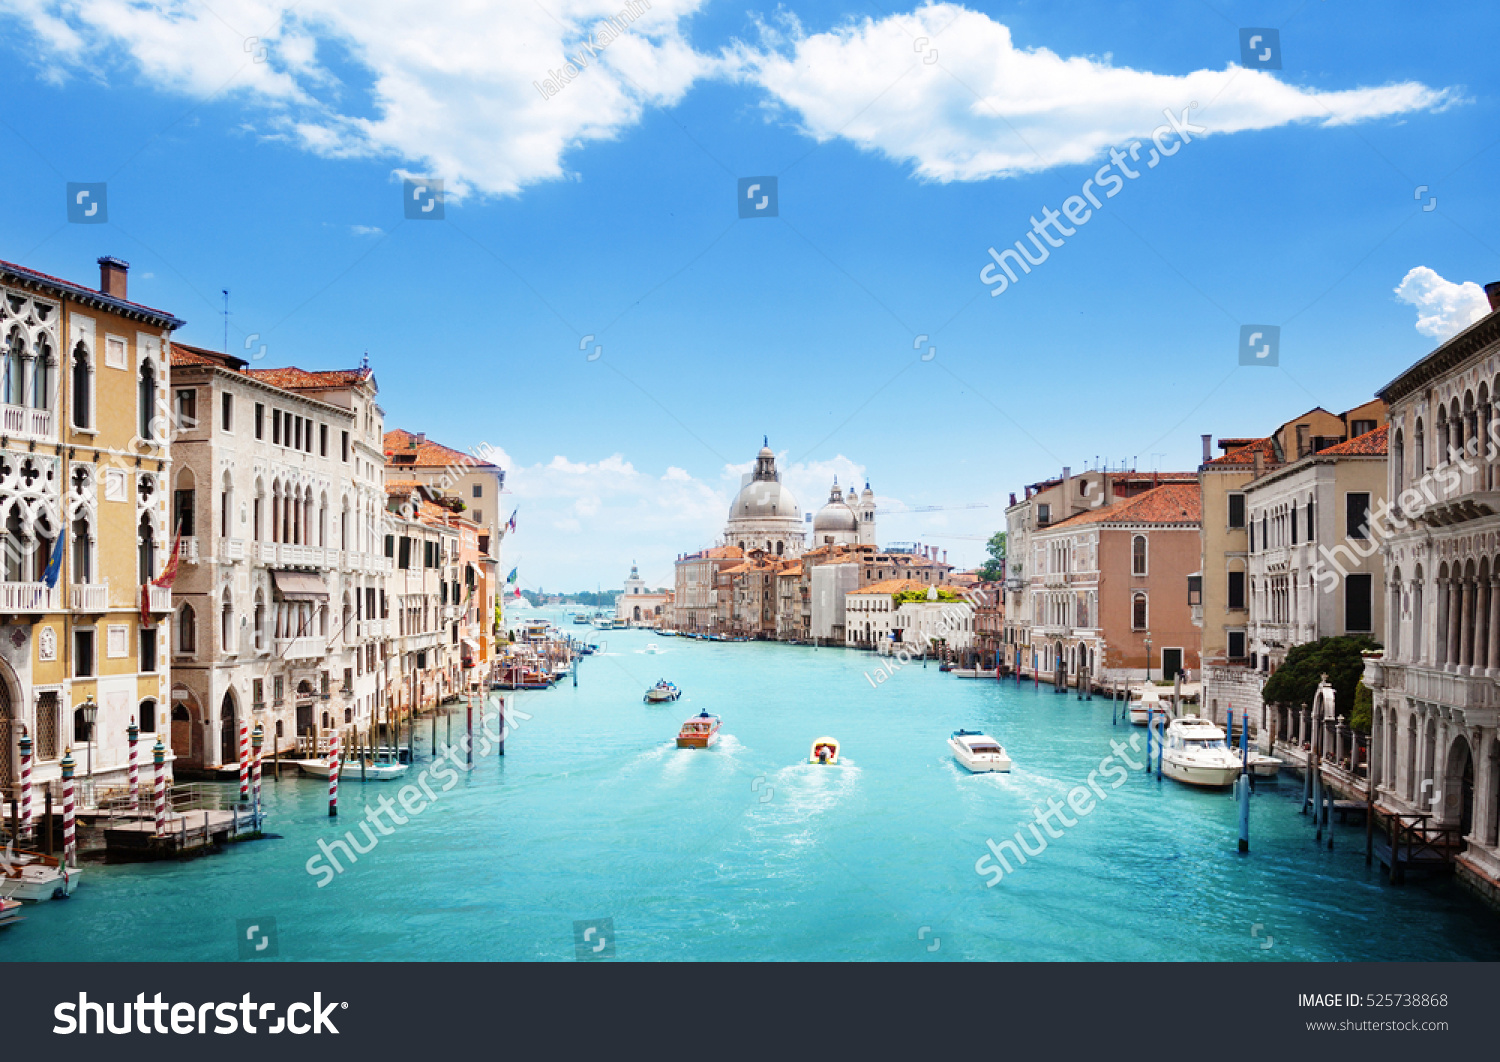 Grand Canal and Basilica Santa Maria della Salute, Venice, Italy #525738868